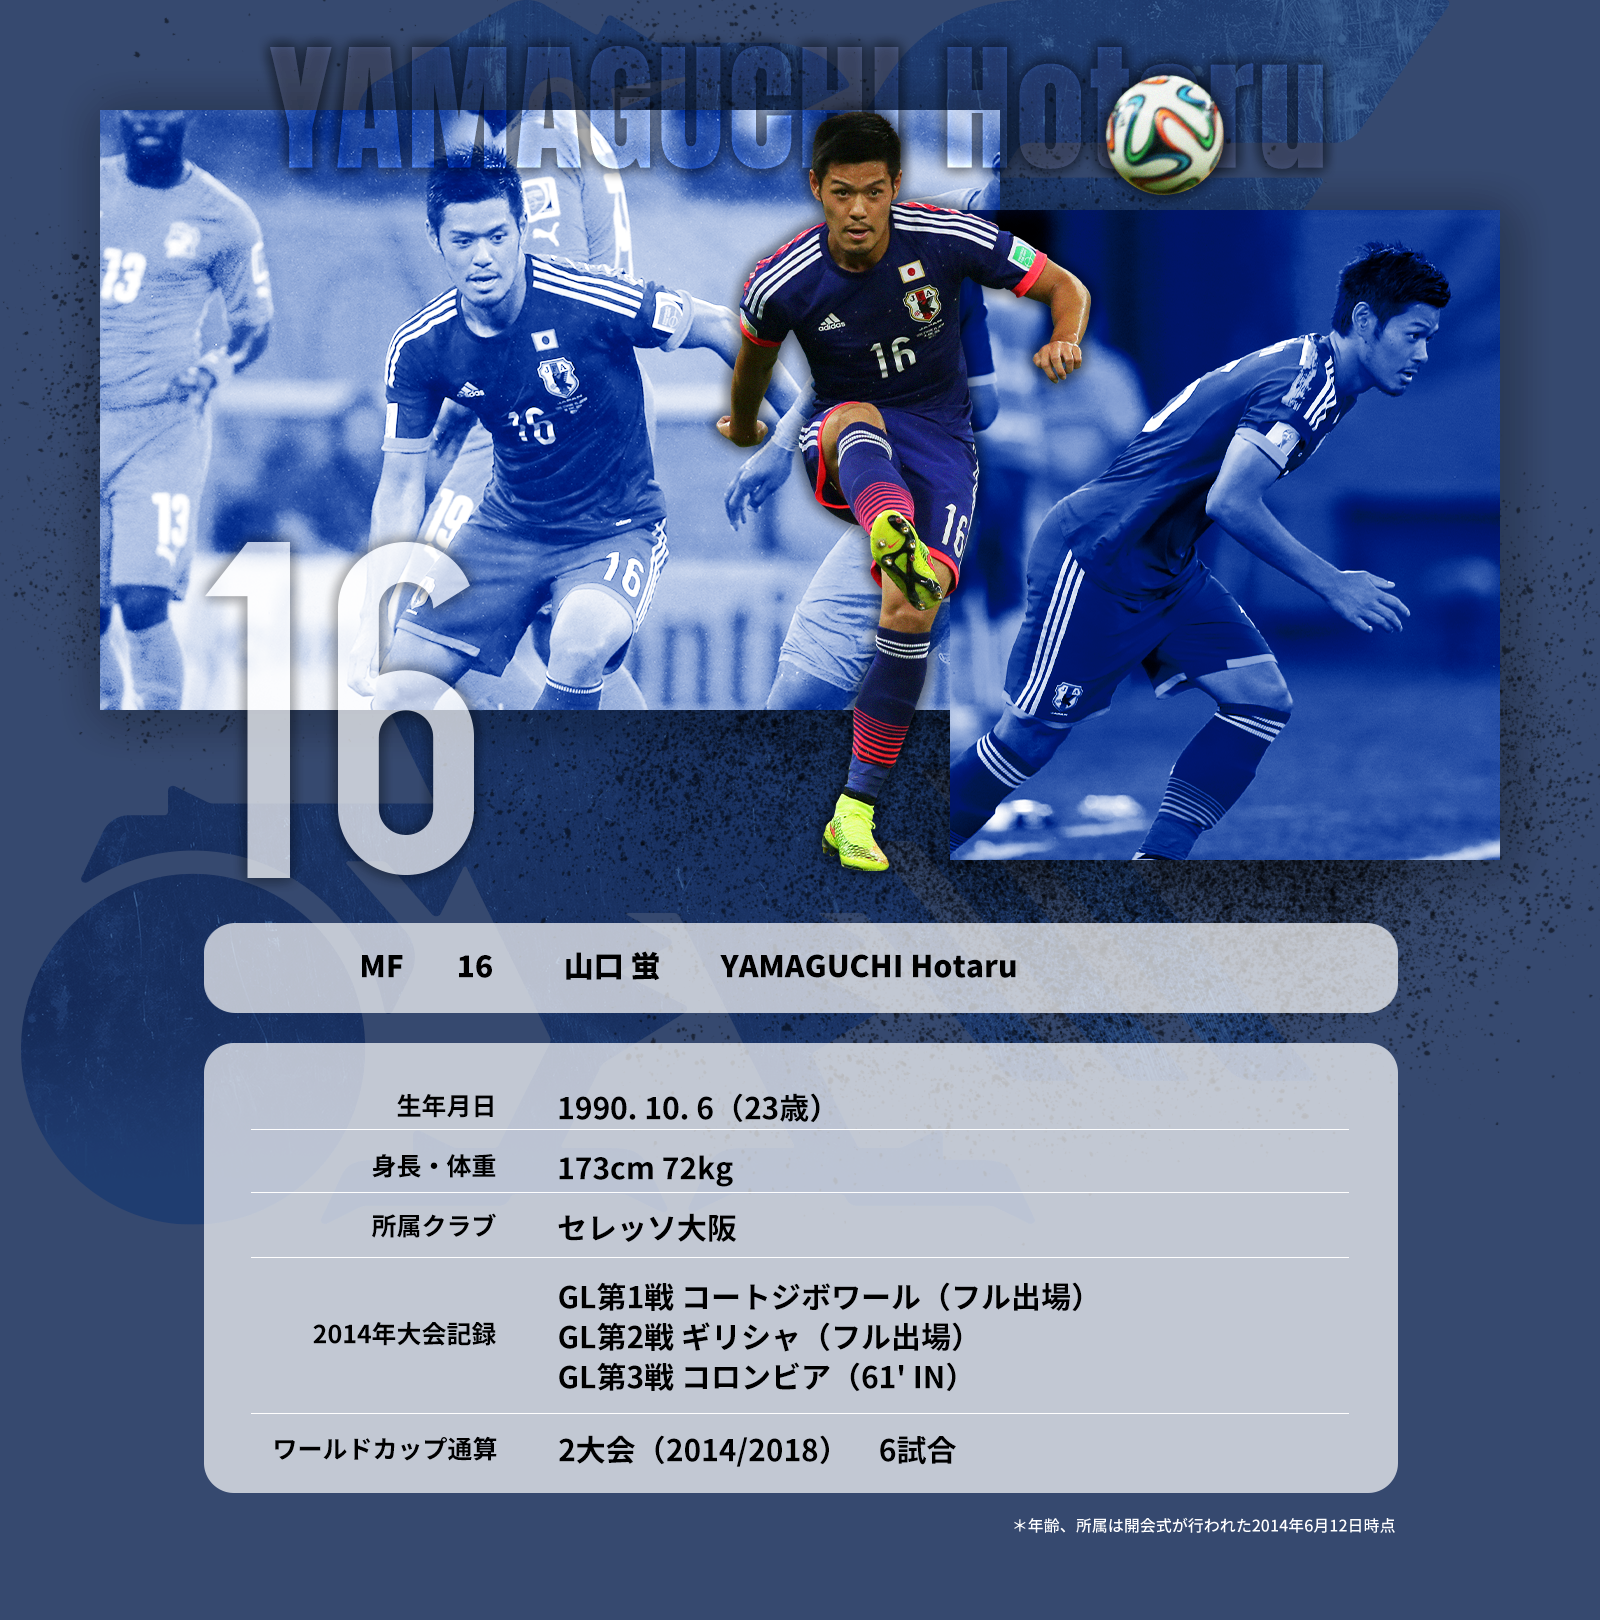 14 ブラジル ワールドカップヒストリー Jfa 公益財団法人日本サッカー協会